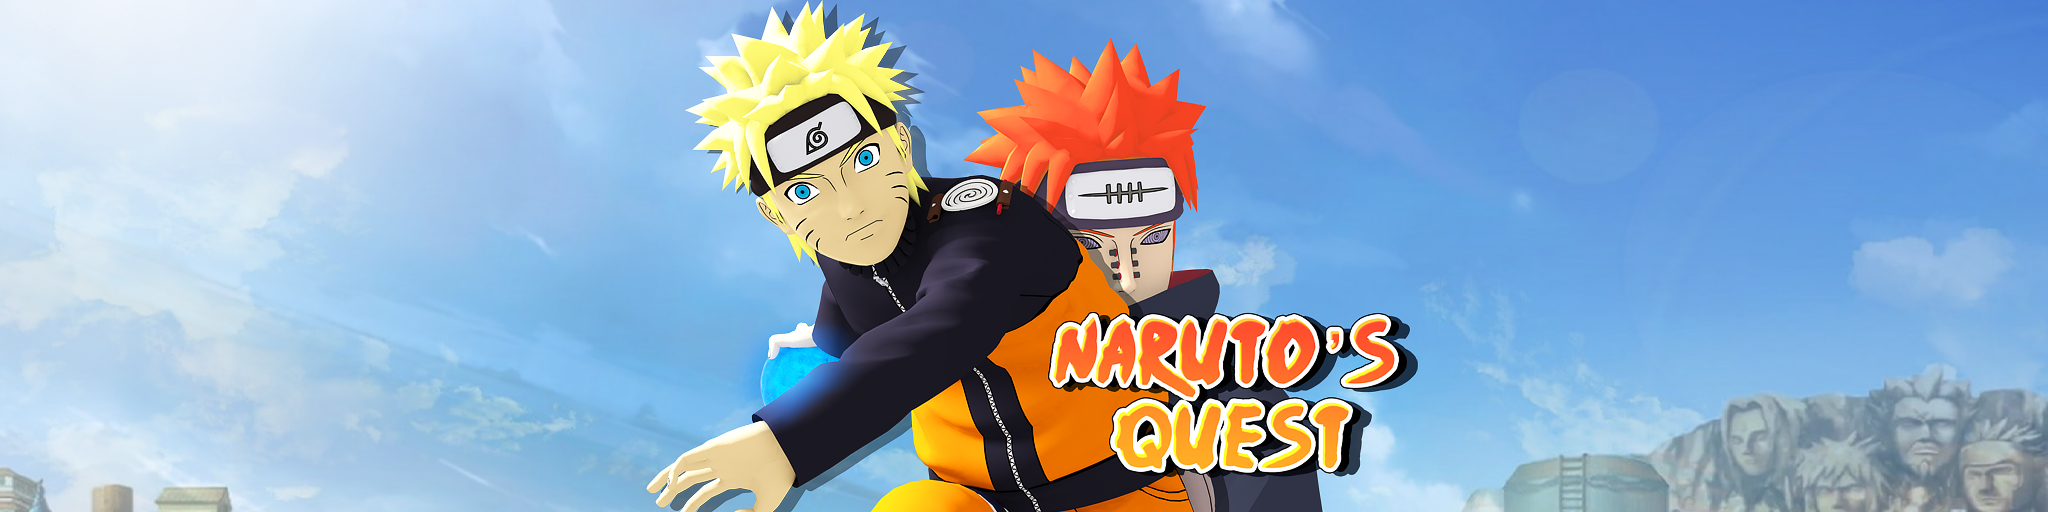 Naruto's Quest